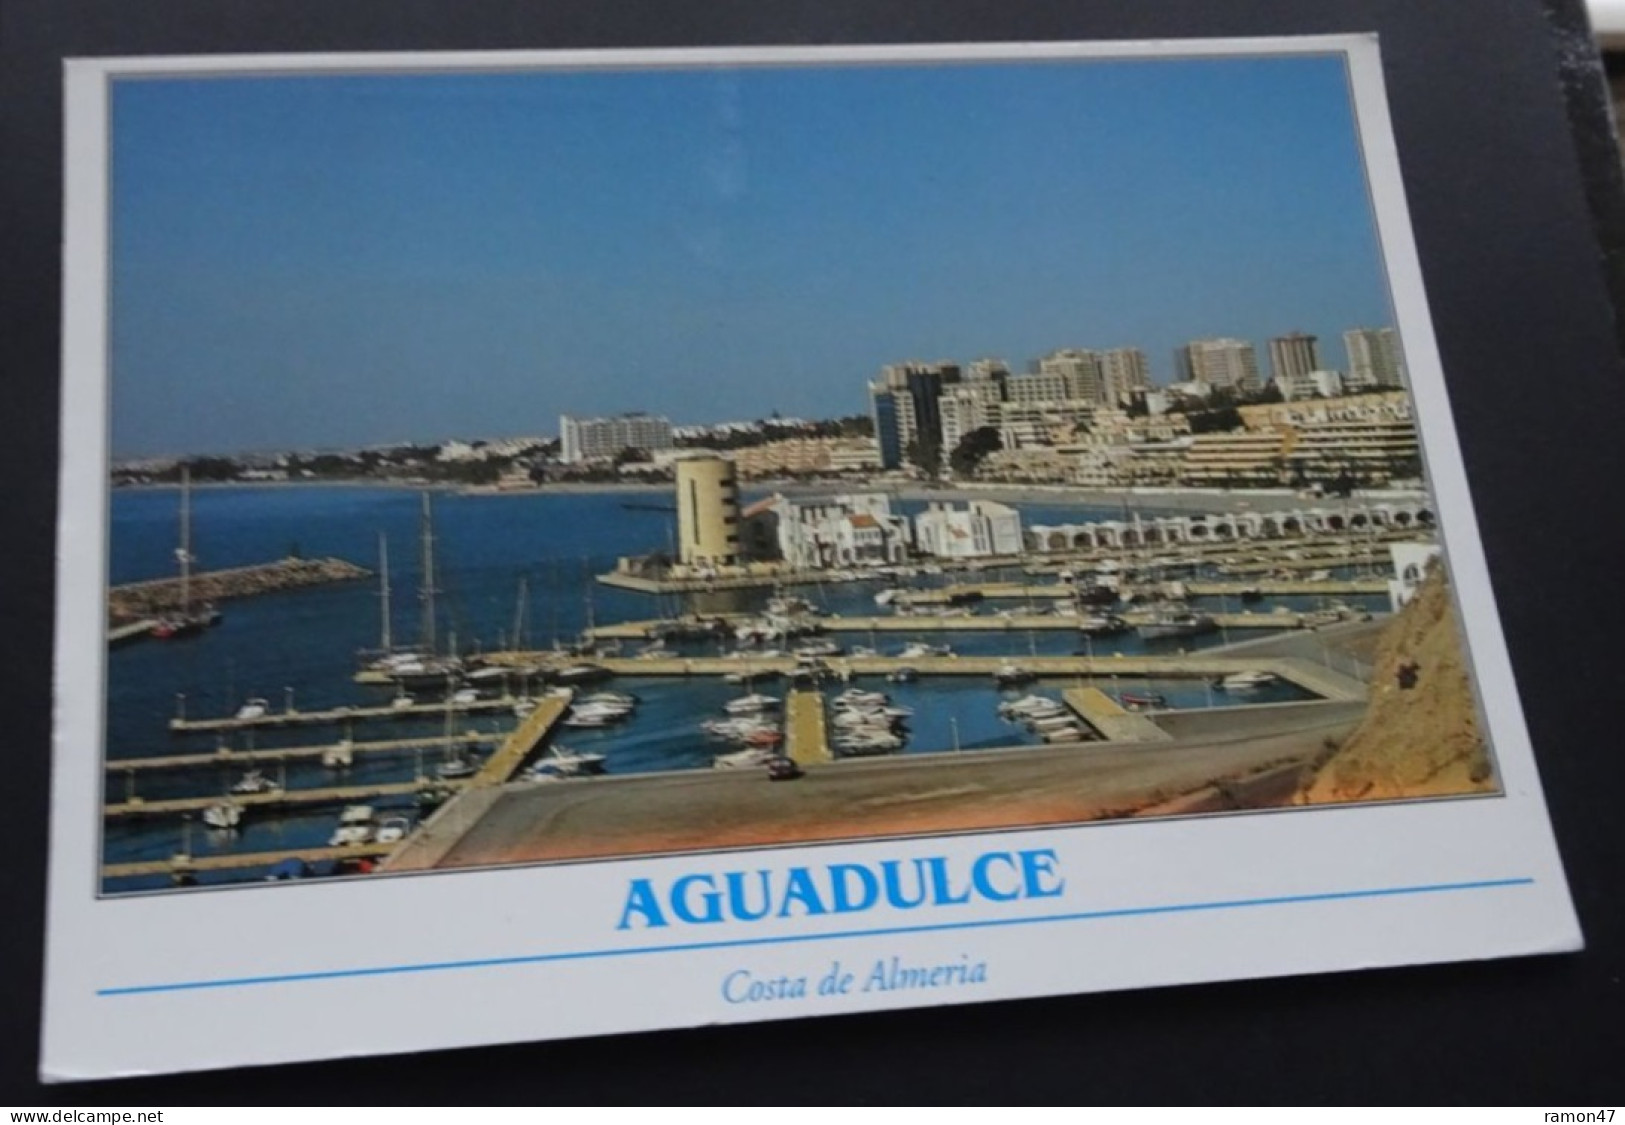 Aguadulce, Costa De Almeria - Vista General Y Pto. Deportivo - Tintore Ediciones, Malaga - # 1.434 - Almería